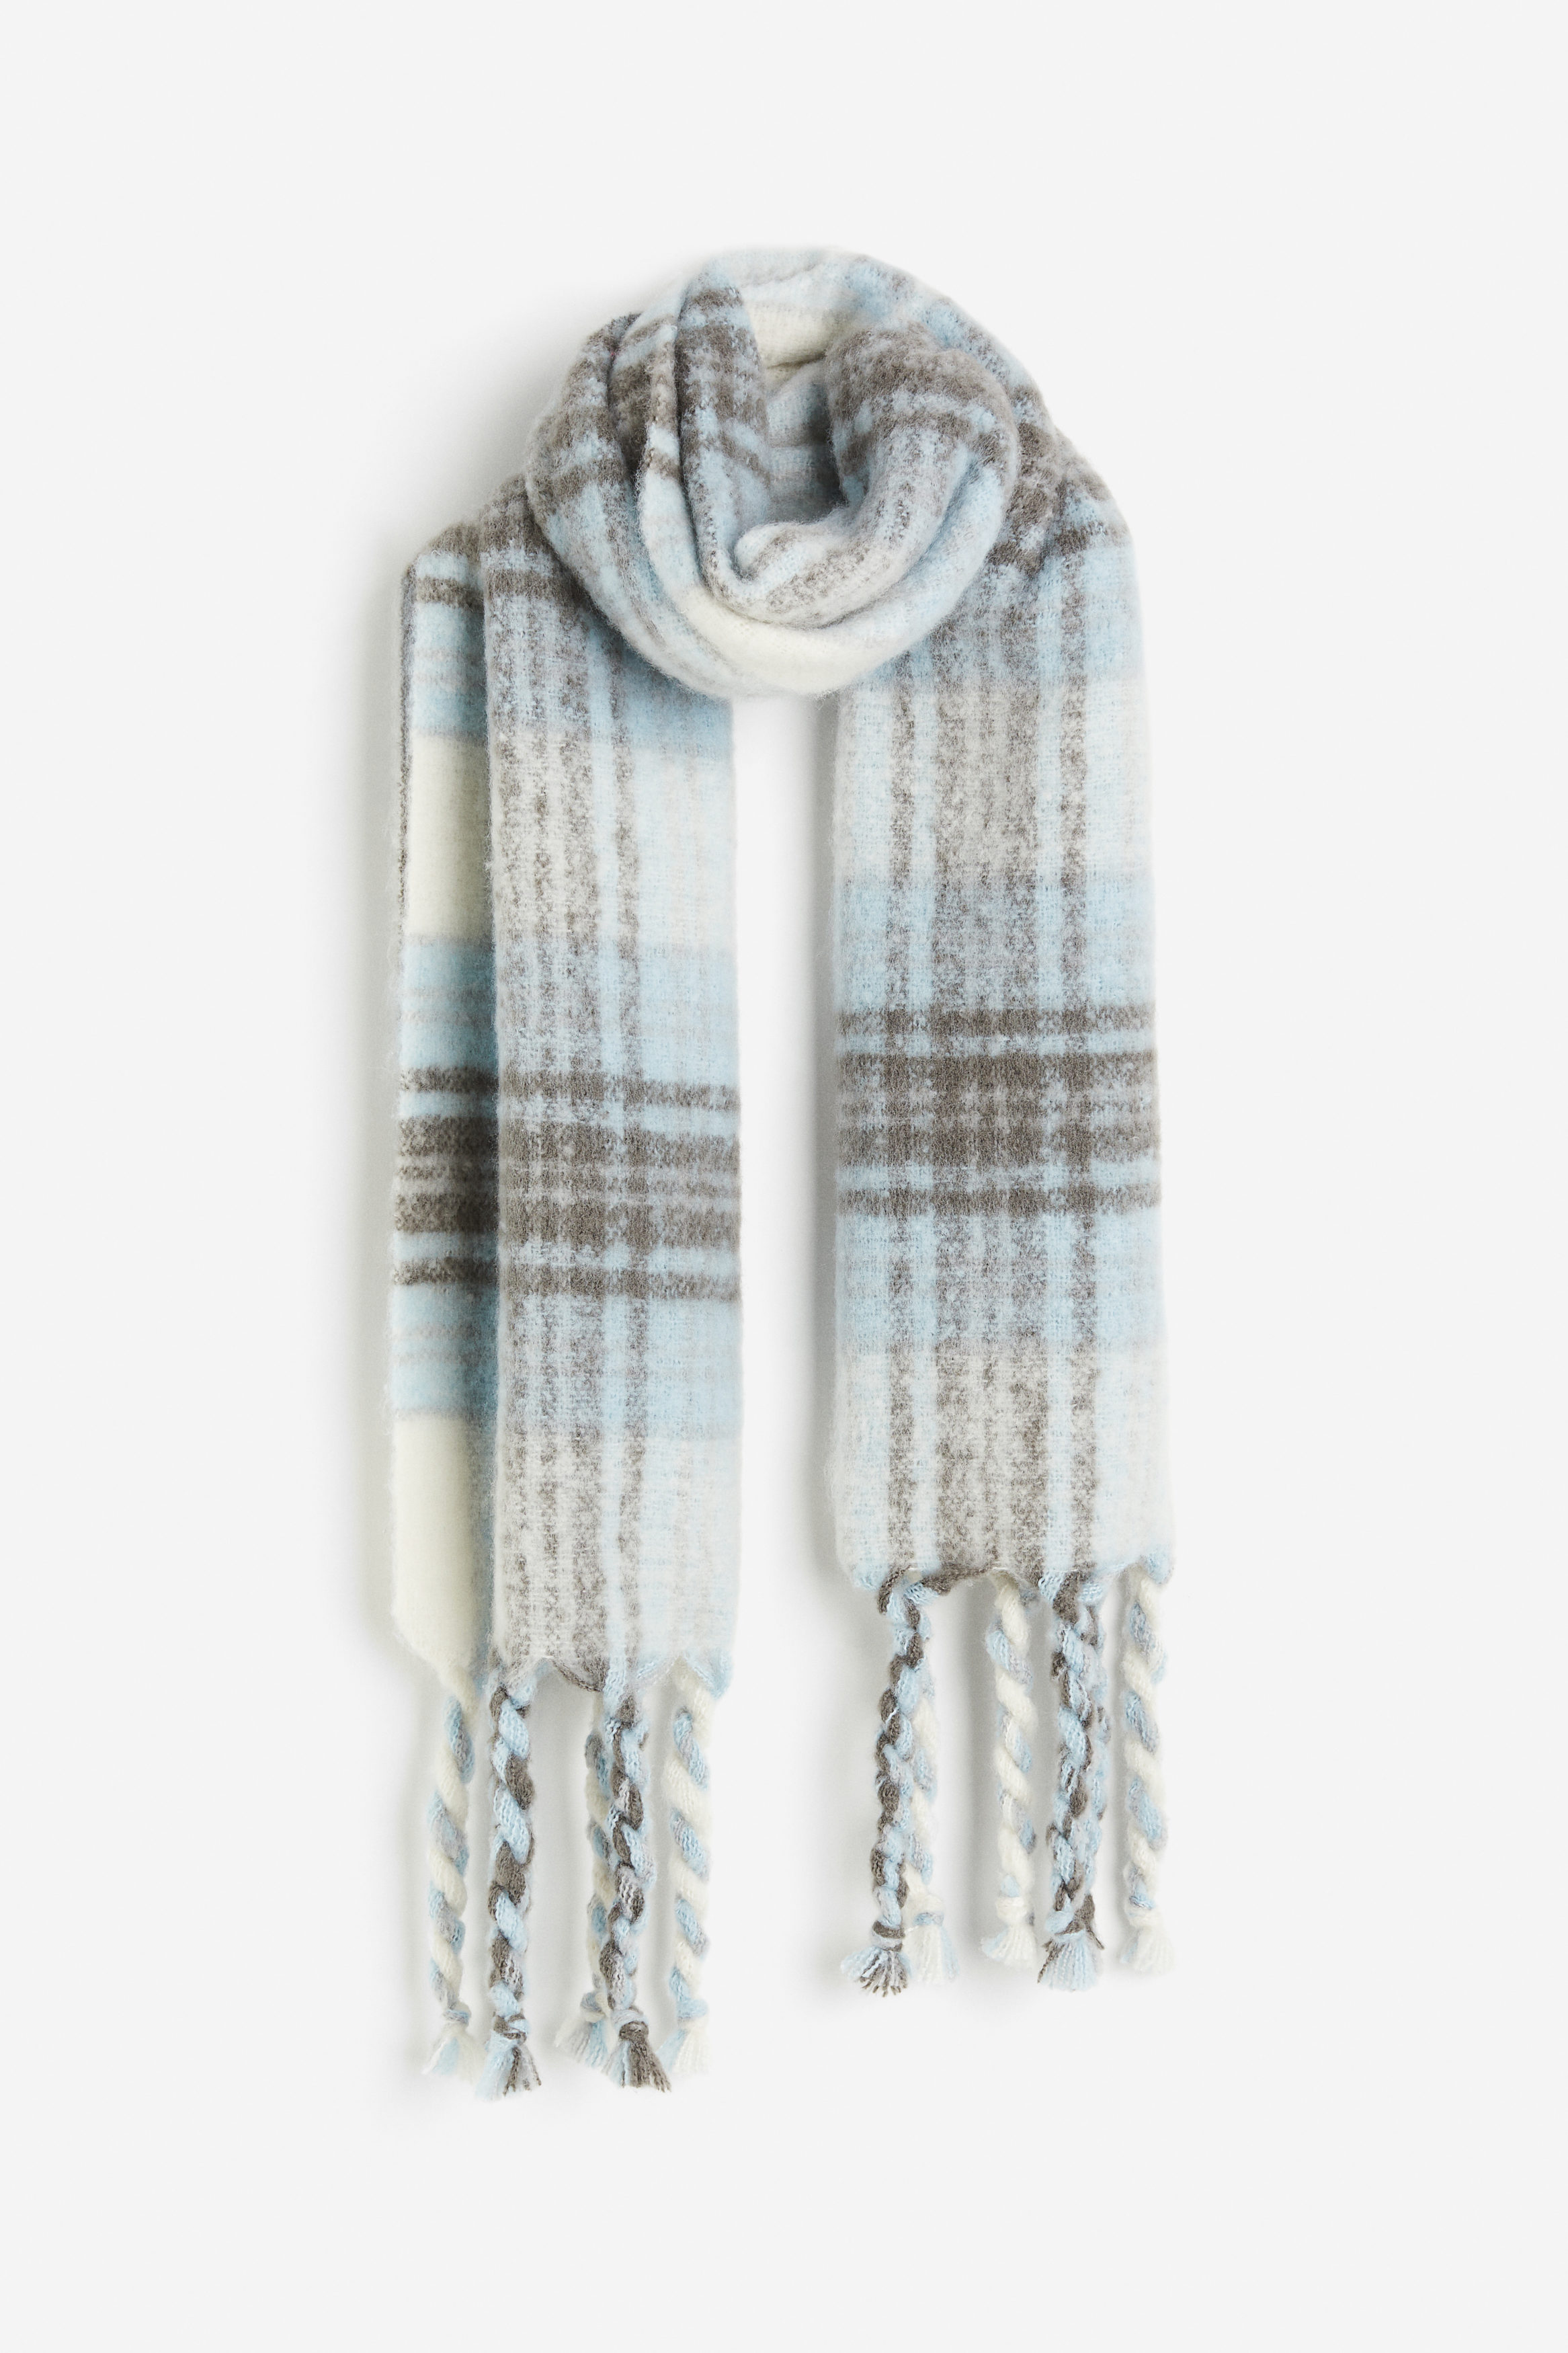 Billede af H&M Halstørklæde Lyseblå/ternet, Halstørklæder. Farve: Light blue/checked I størrelse Onesize